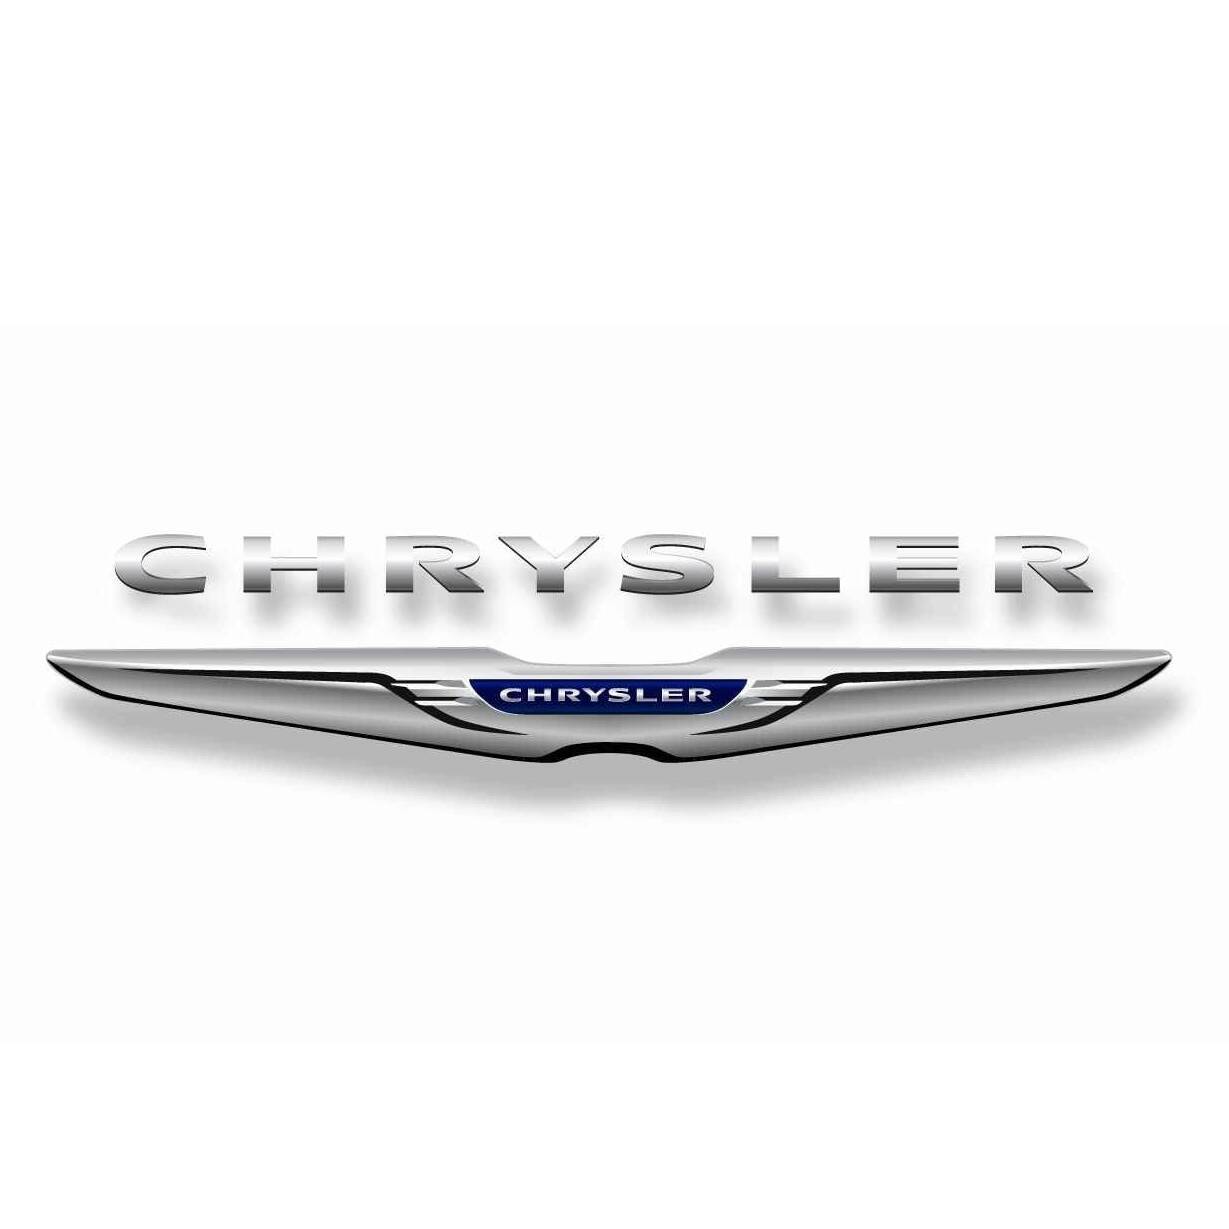 Chrysler-logo.jpg